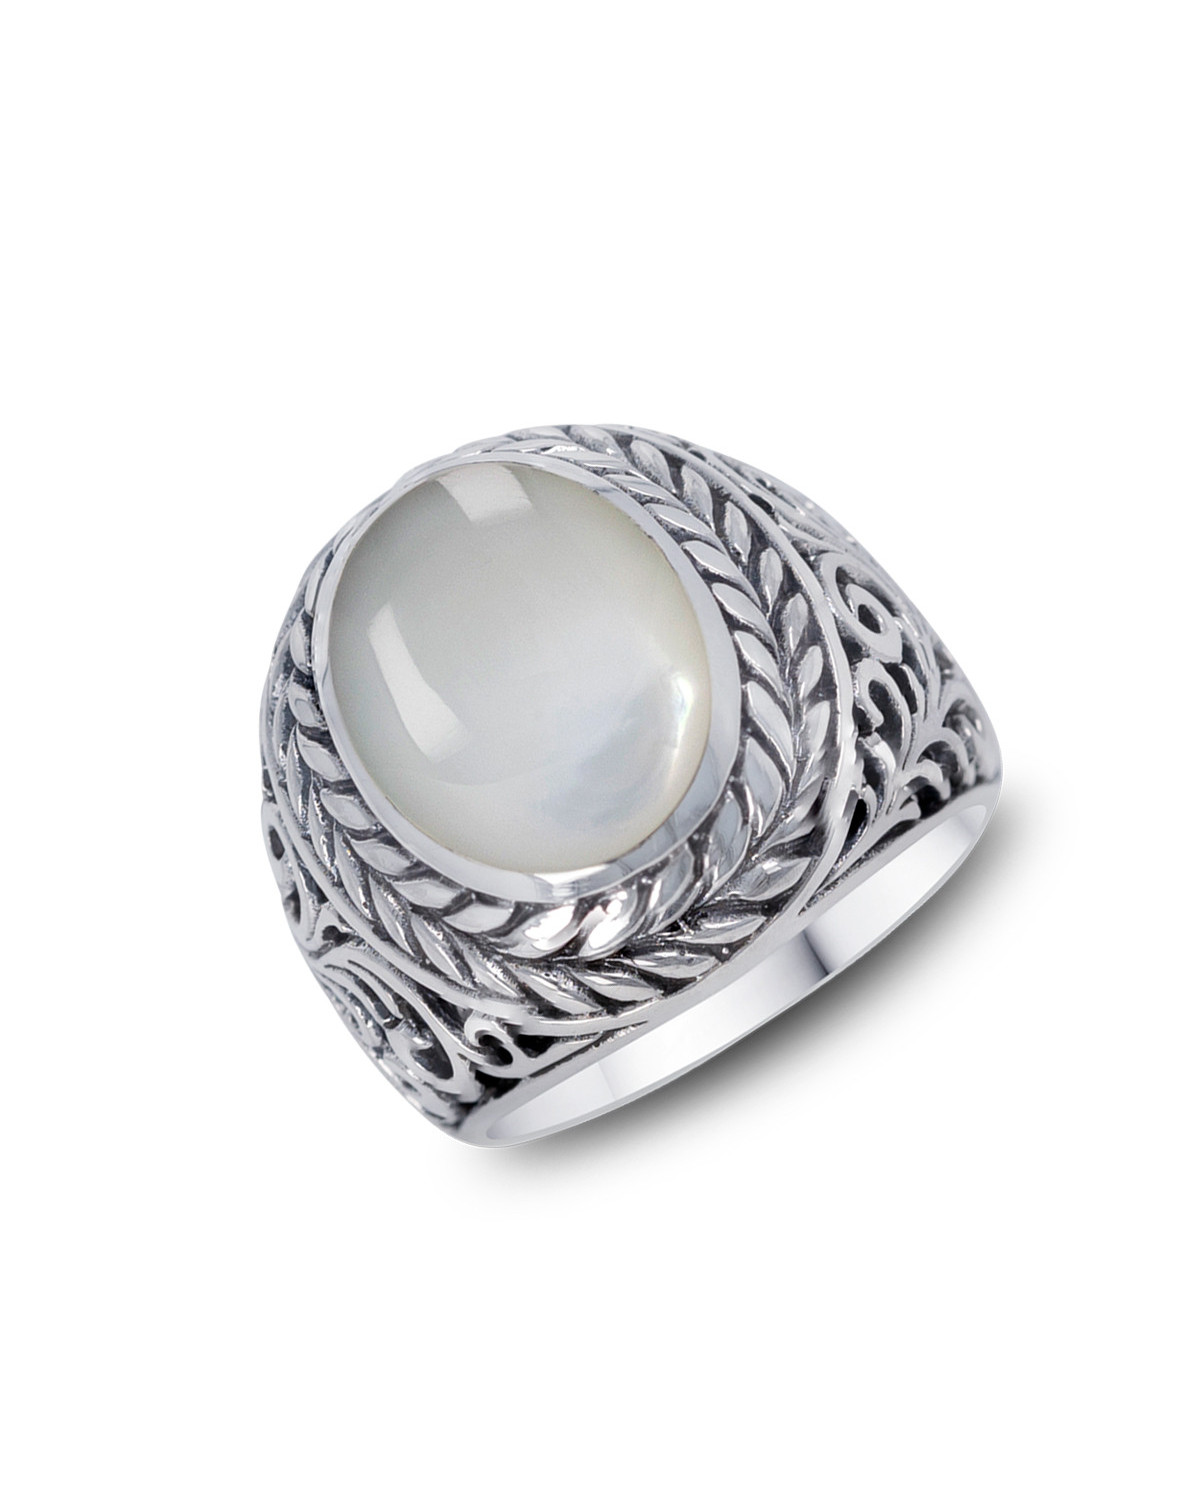 Ring aus 925er Sterlingsilber mit natürlichem weißen Perlmutt.